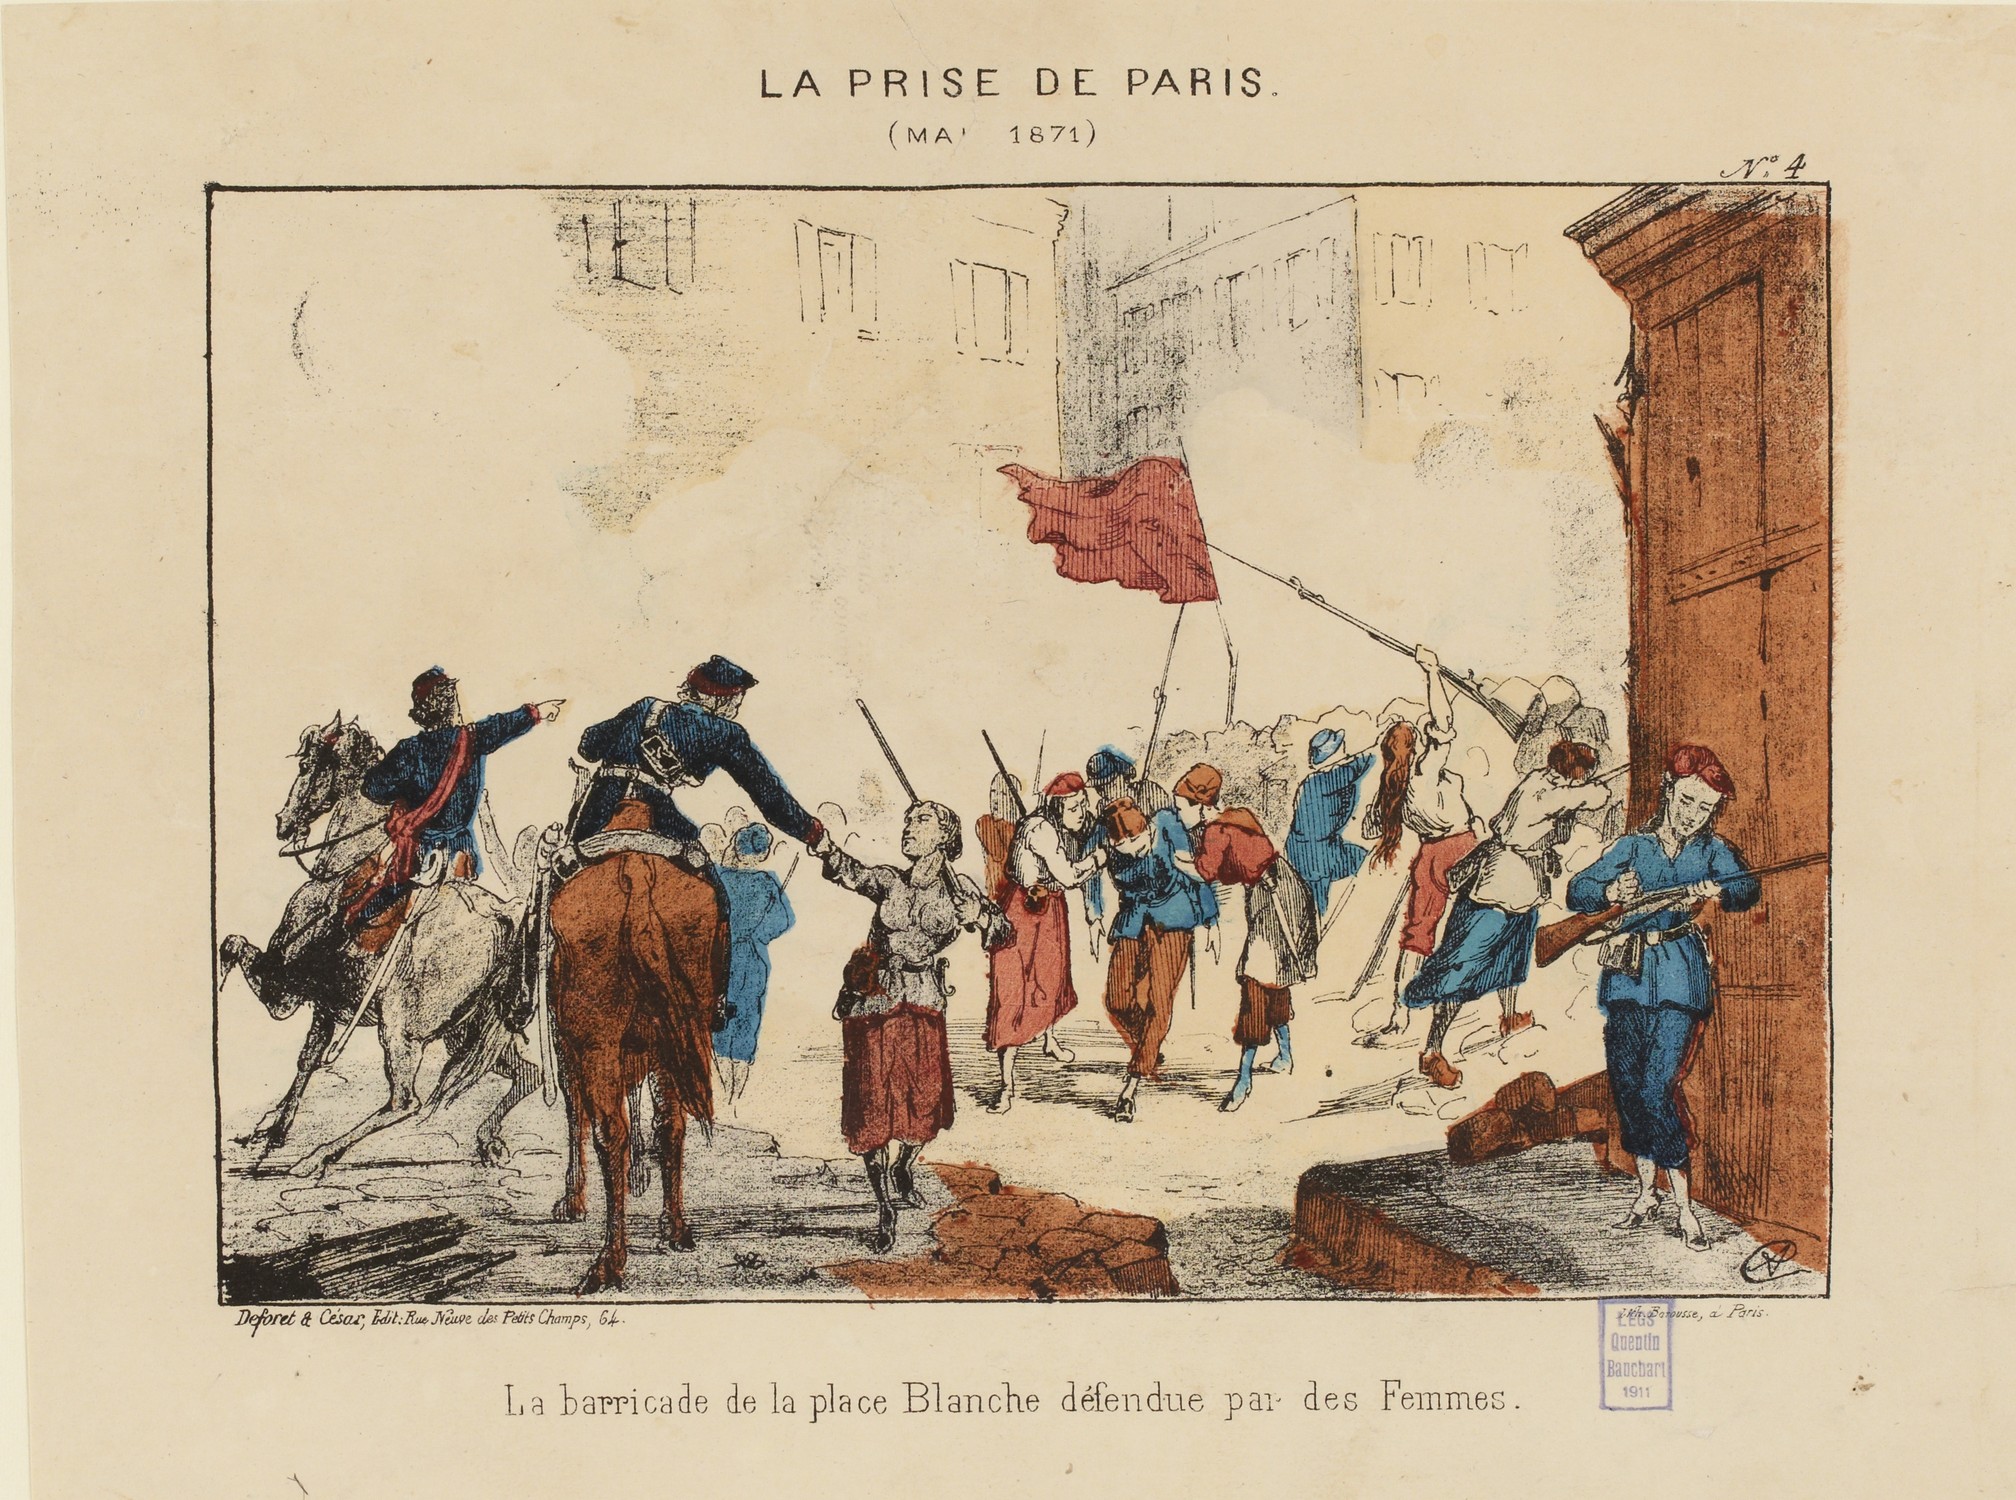 Semaine sanglante - Barricade de la place Blanche défendue par des femmes (© Musée Carnavalet - Histoire de Paris)